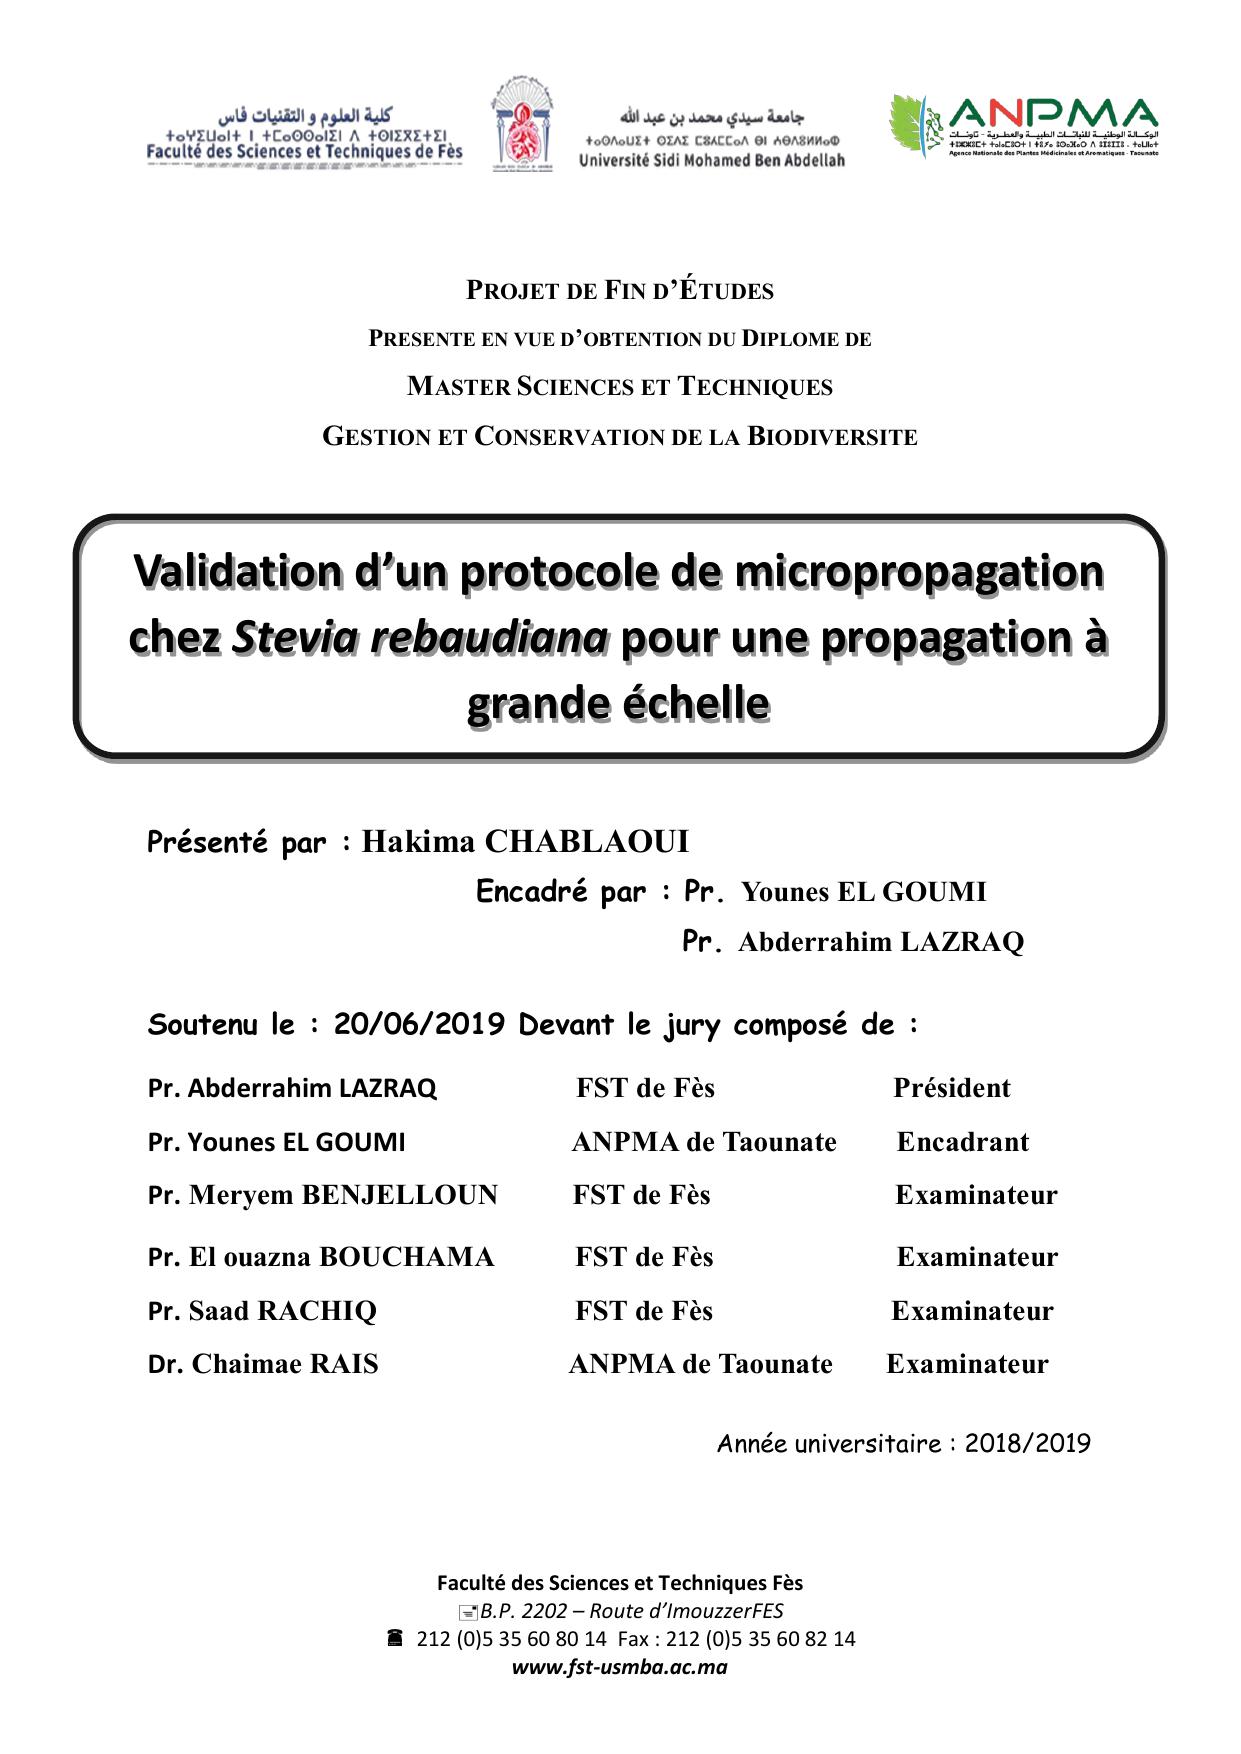 Validation d’un protocole de micropropagation chez Stevia rebaudiana pour une propagation à grande échelle